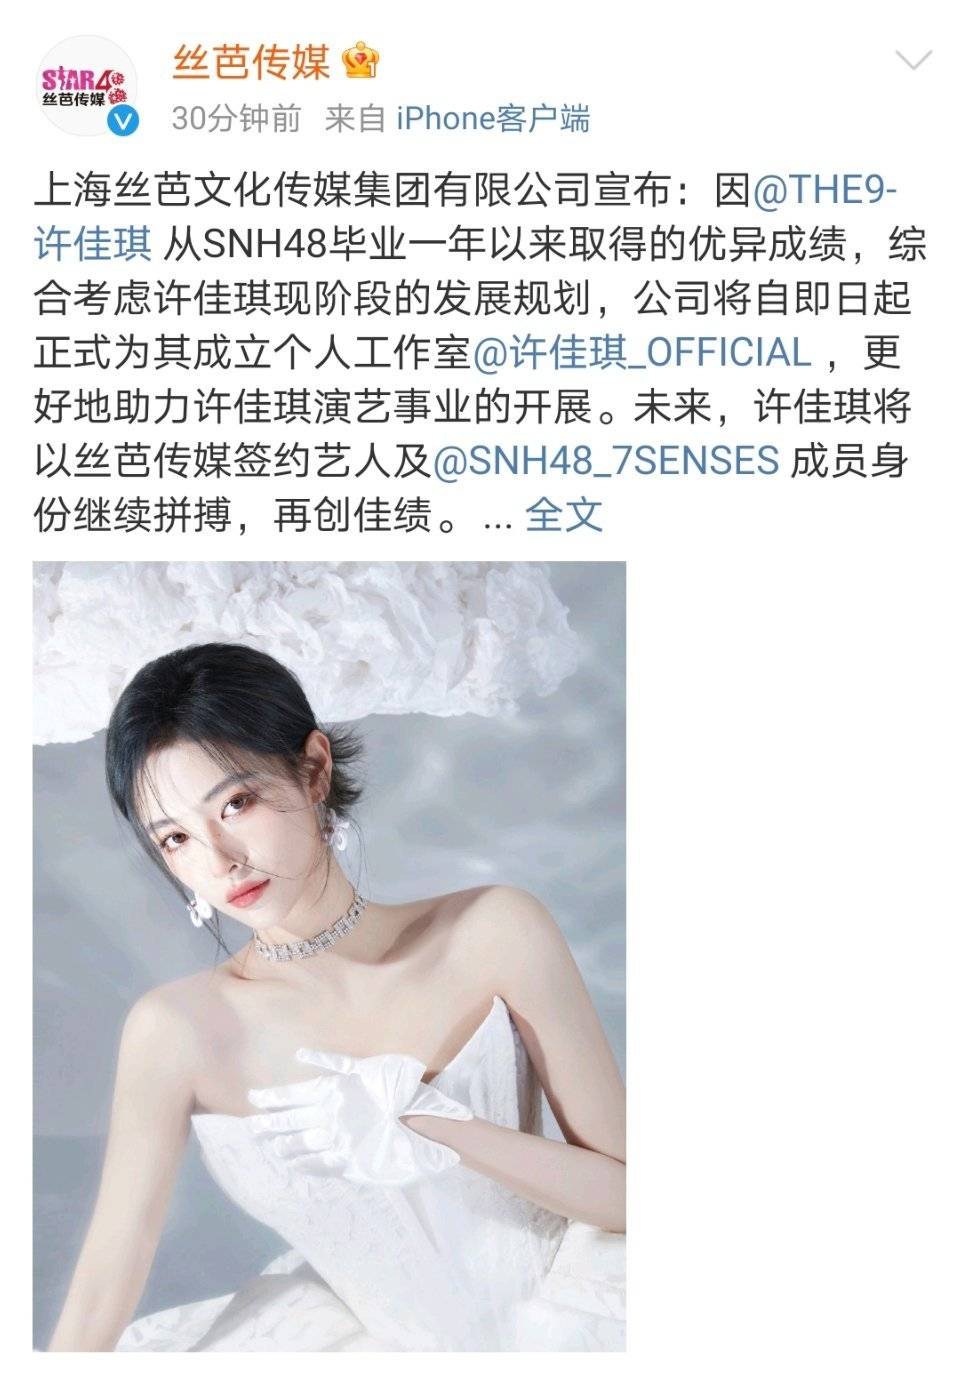 许佳琪所属经纪公司丝芭传媒刚刚发布公告,宣布为旗下艺人许佳琪开设